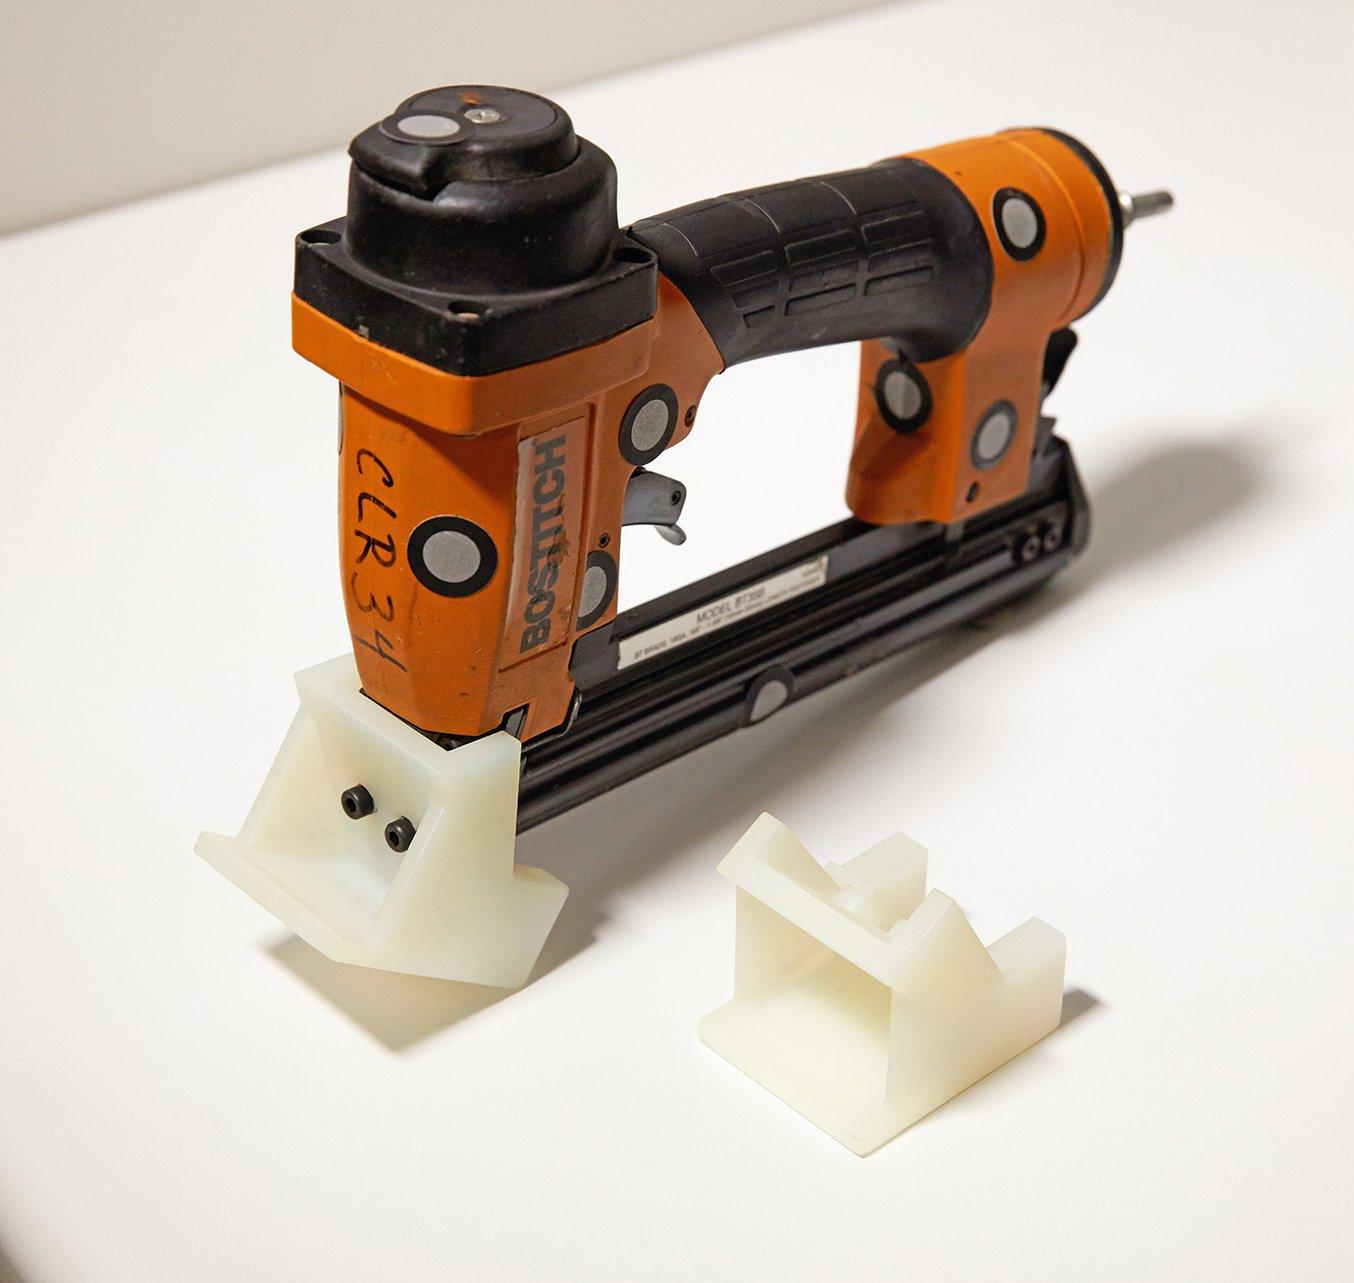 Les ingénieurs de production d'Ashley Furniture ont élaboré des adaptateurs d'outils sur mesure par impression 3D, pour garantir un positionnement homogène des clous et des agrafes sur leurs meubles de rangement. L'adaptateur montré ici est en Durable Resi